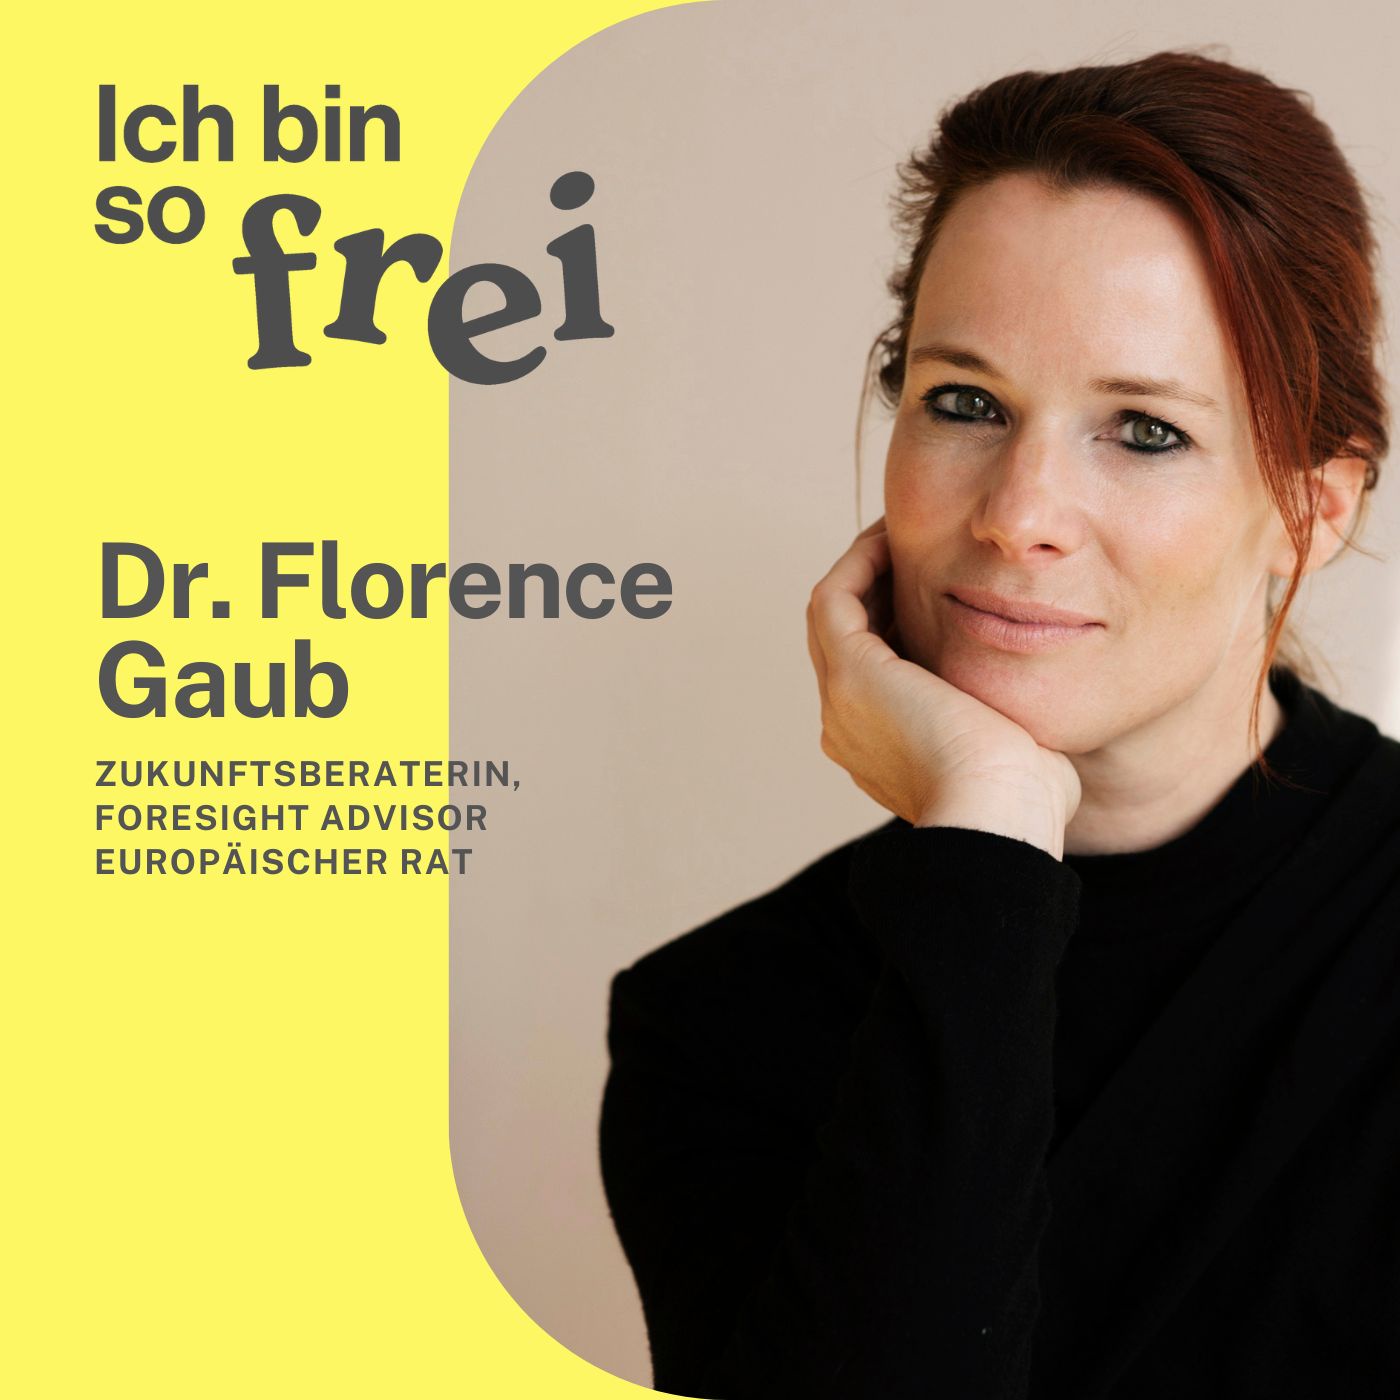 #28 Dr. Florence Gaub über Zukunftsberatung und Frauen in der Sicherheitspolitik